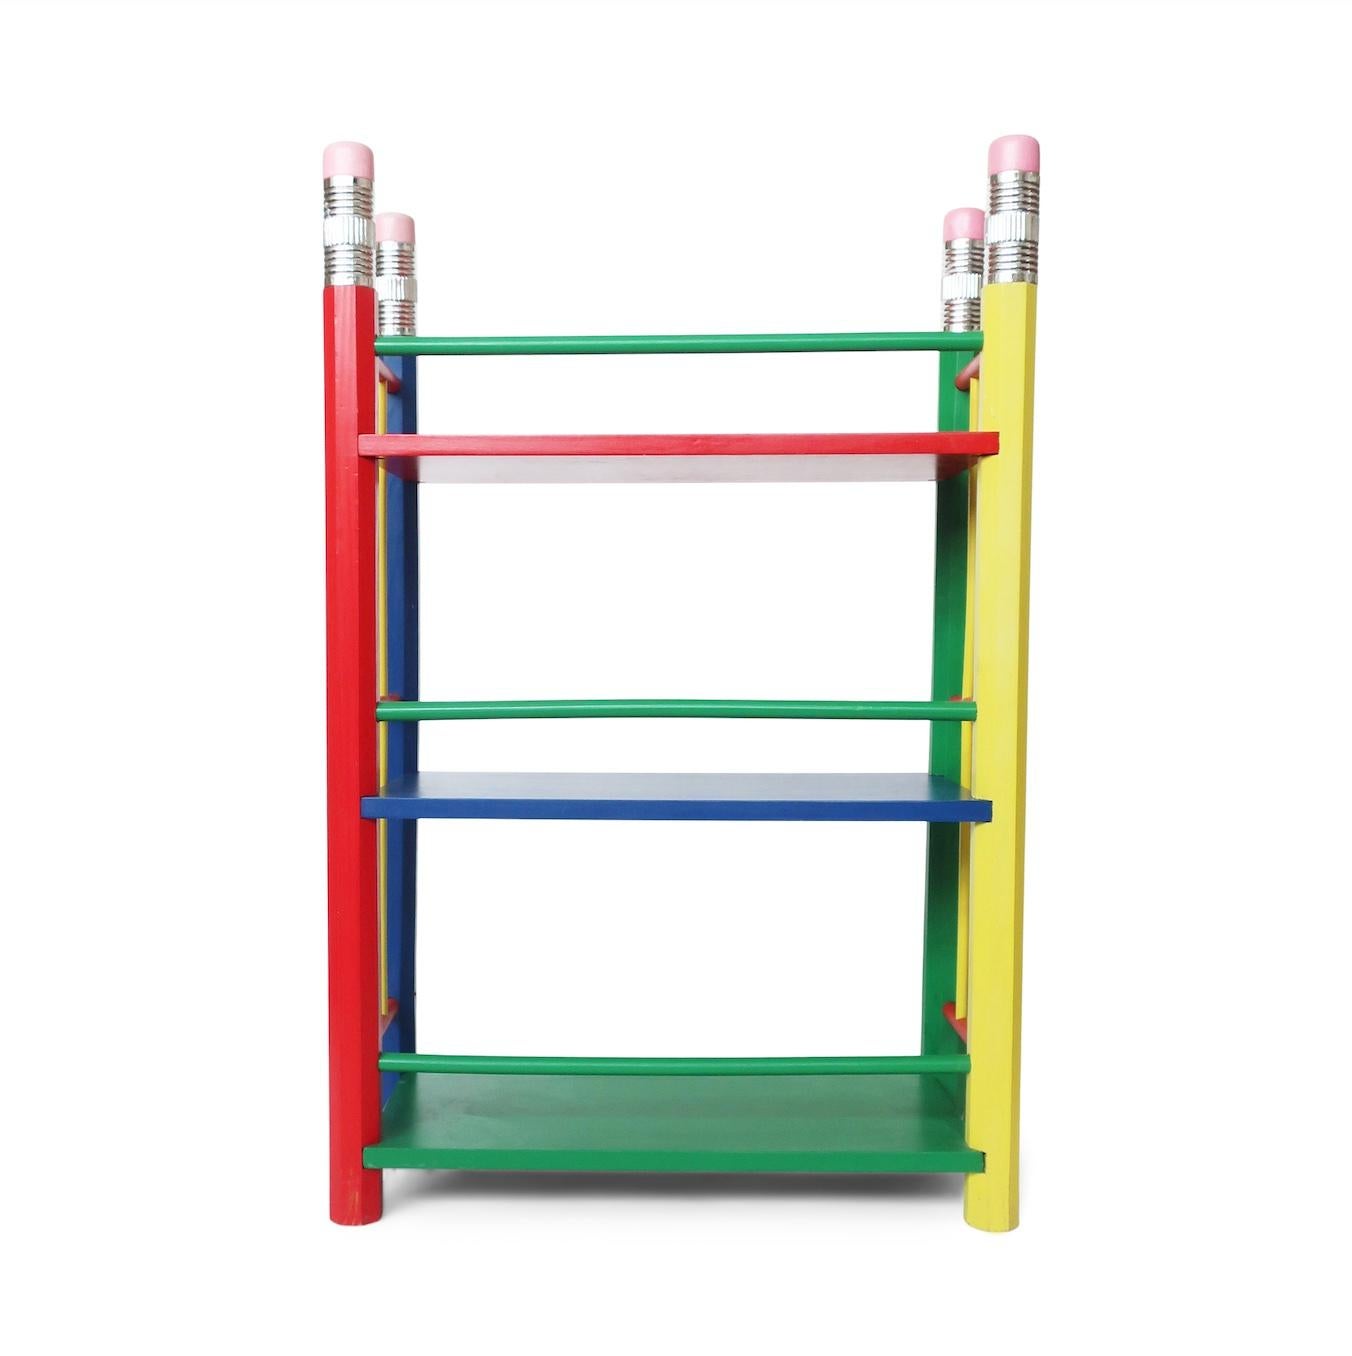 Post-Modern 1980s Multicolor Pencil Shelf by Pierre Sala